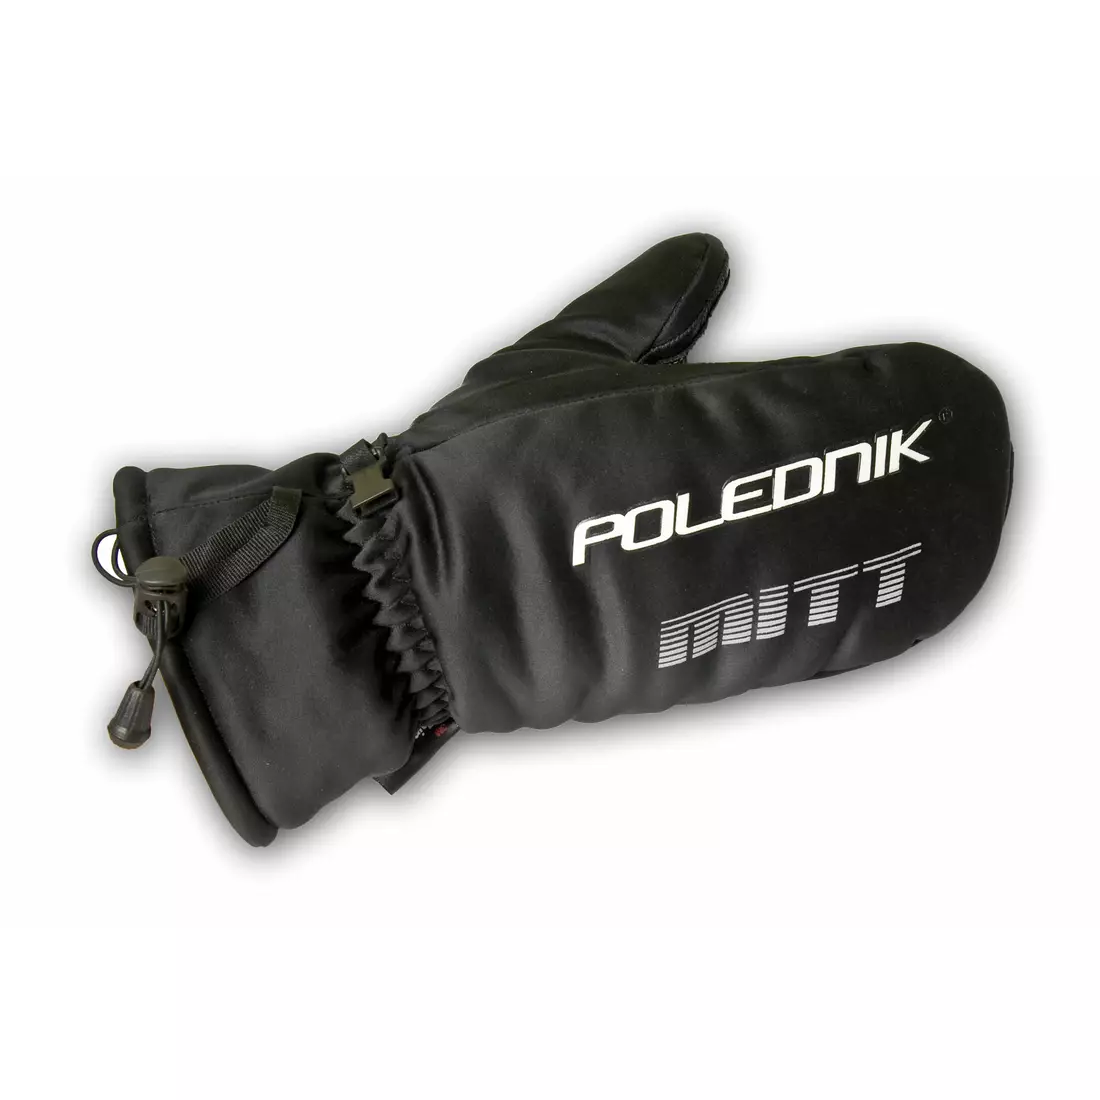 POLEDNIK winter gloves MITT, color: black